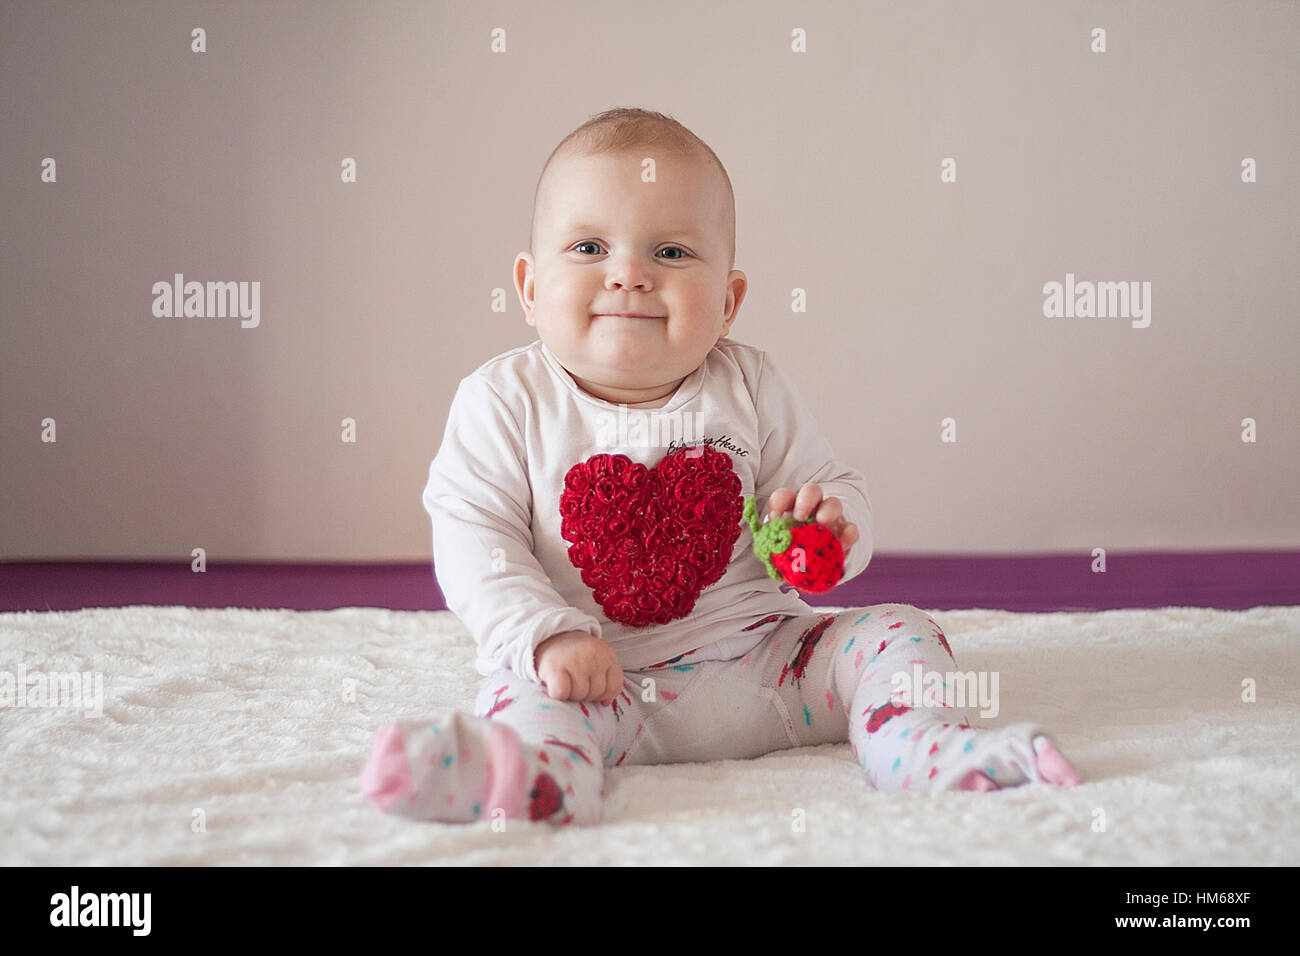 Lächelndes Babymädchen mit Herz auf ihr T-shirt und Erdbeere in ihren Händen. Weißen hellen Hintergrund. Stockfoto